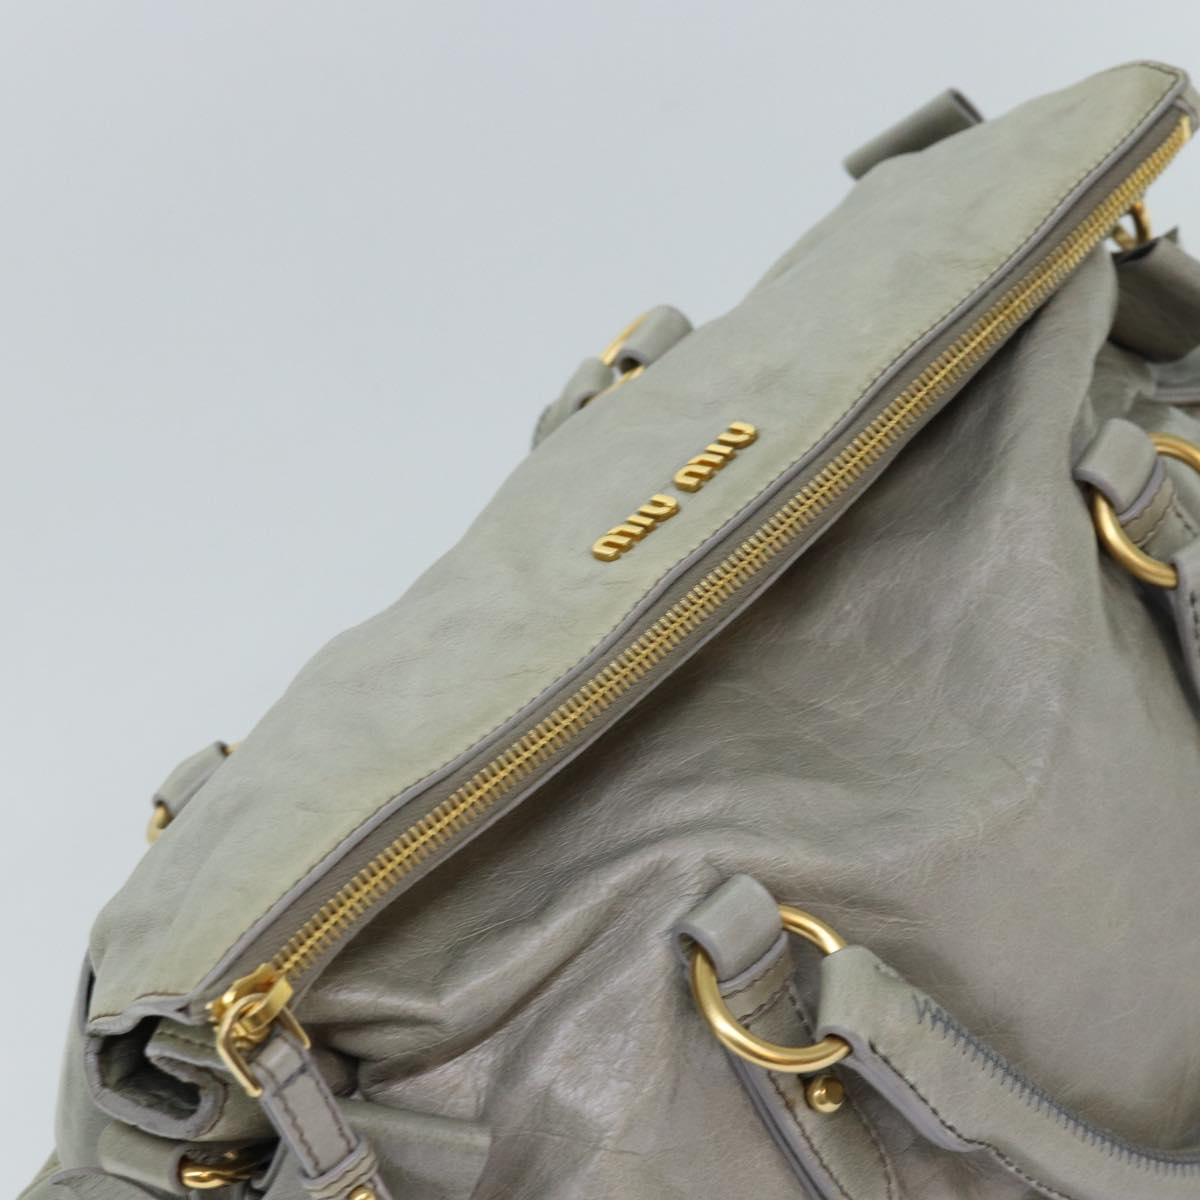 Miu Miu Hand Bag Leather Gray Auth ki4508